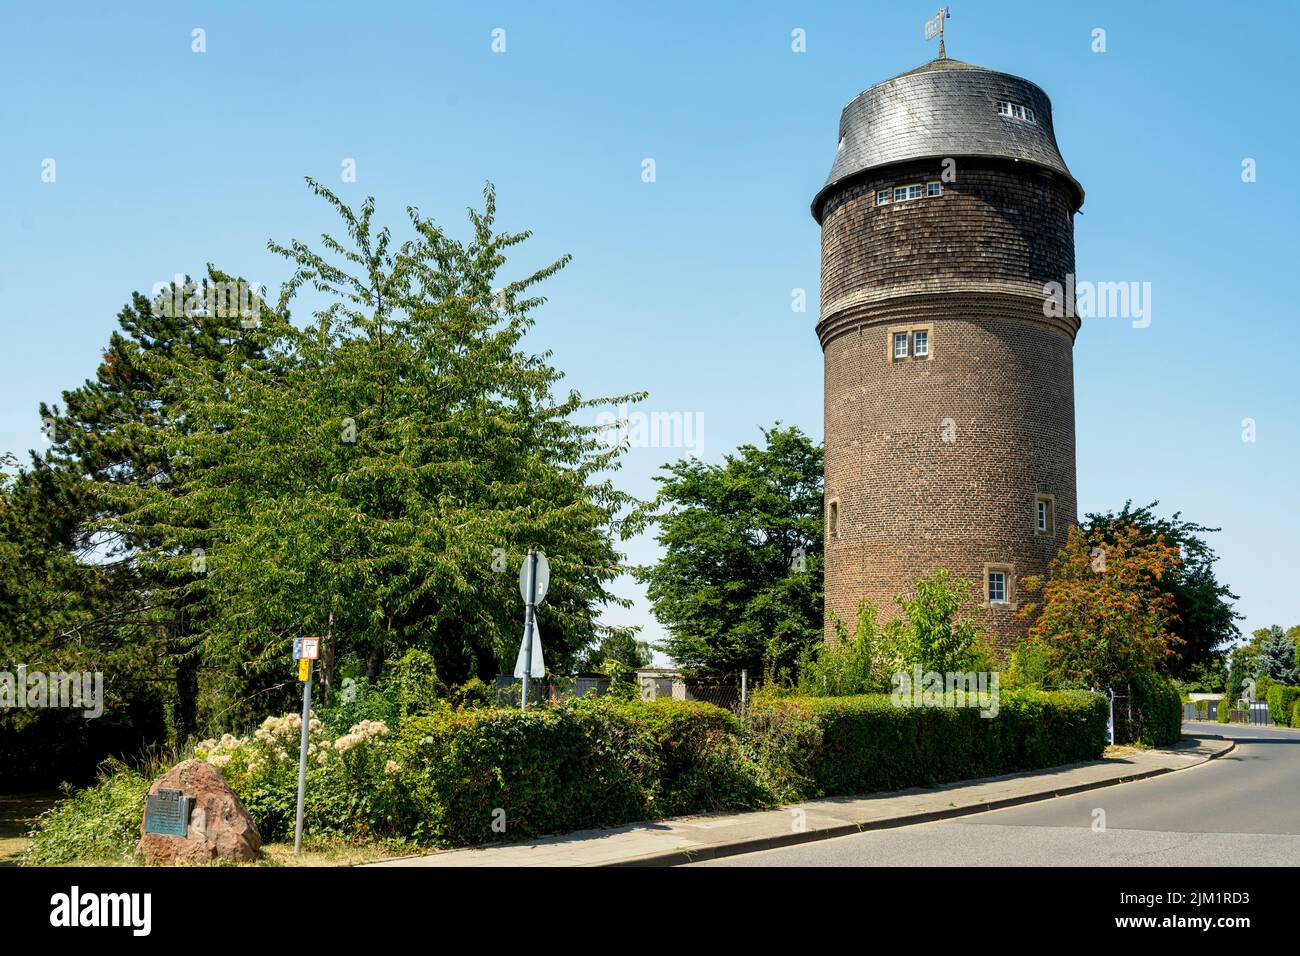 Deutschland, NRW, Kreis Düren, Merzenich, Wasserturm Stock Photo